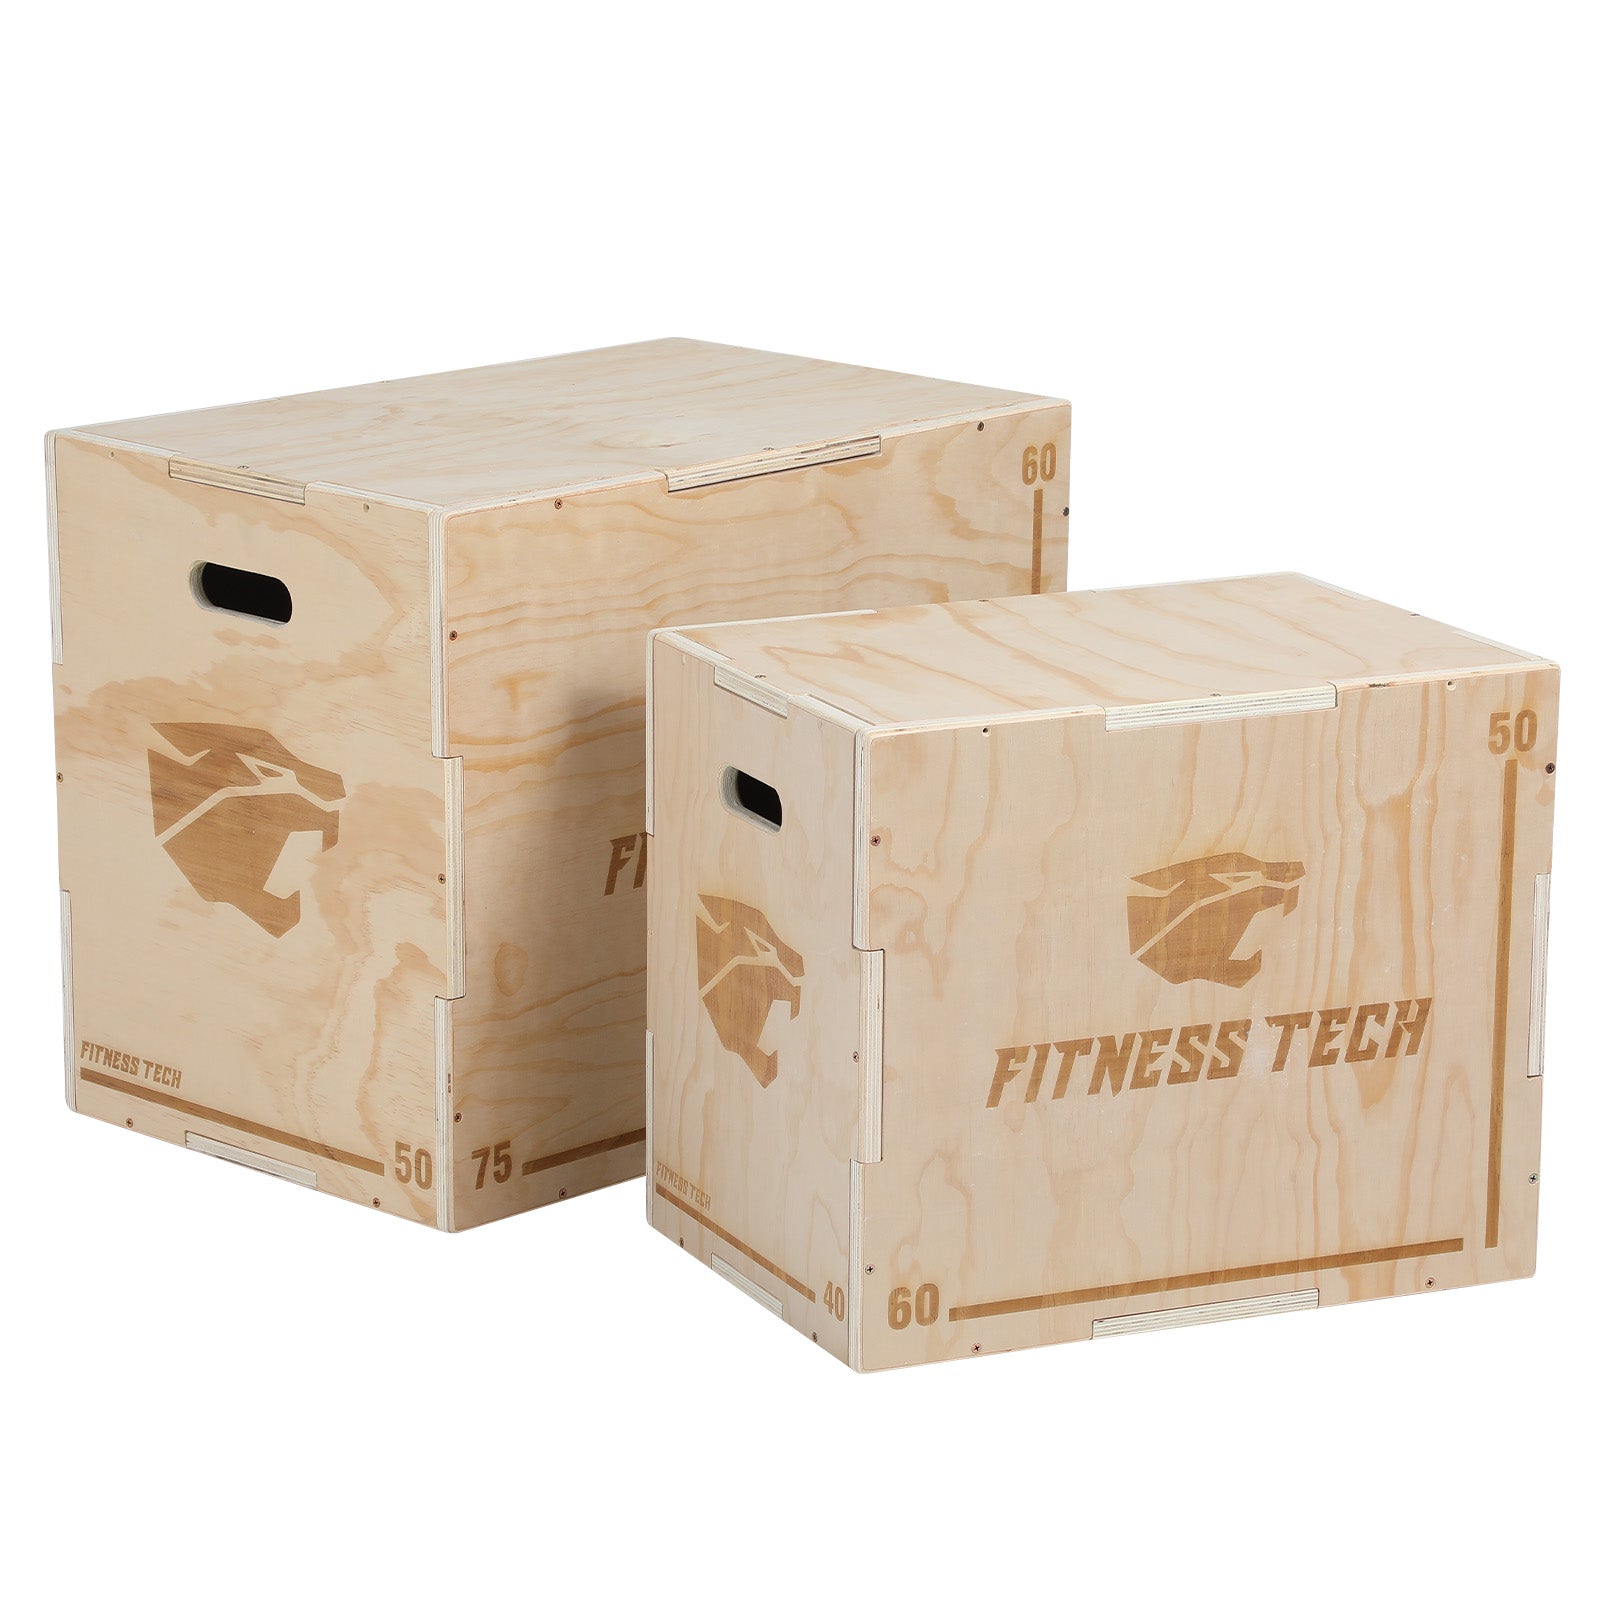 CANNON - Jump Box Cajón Pliométrico de Madera. Caja de Salto para Hacer  Deporte, Cross Training, Fitness Musculación y Crossfit